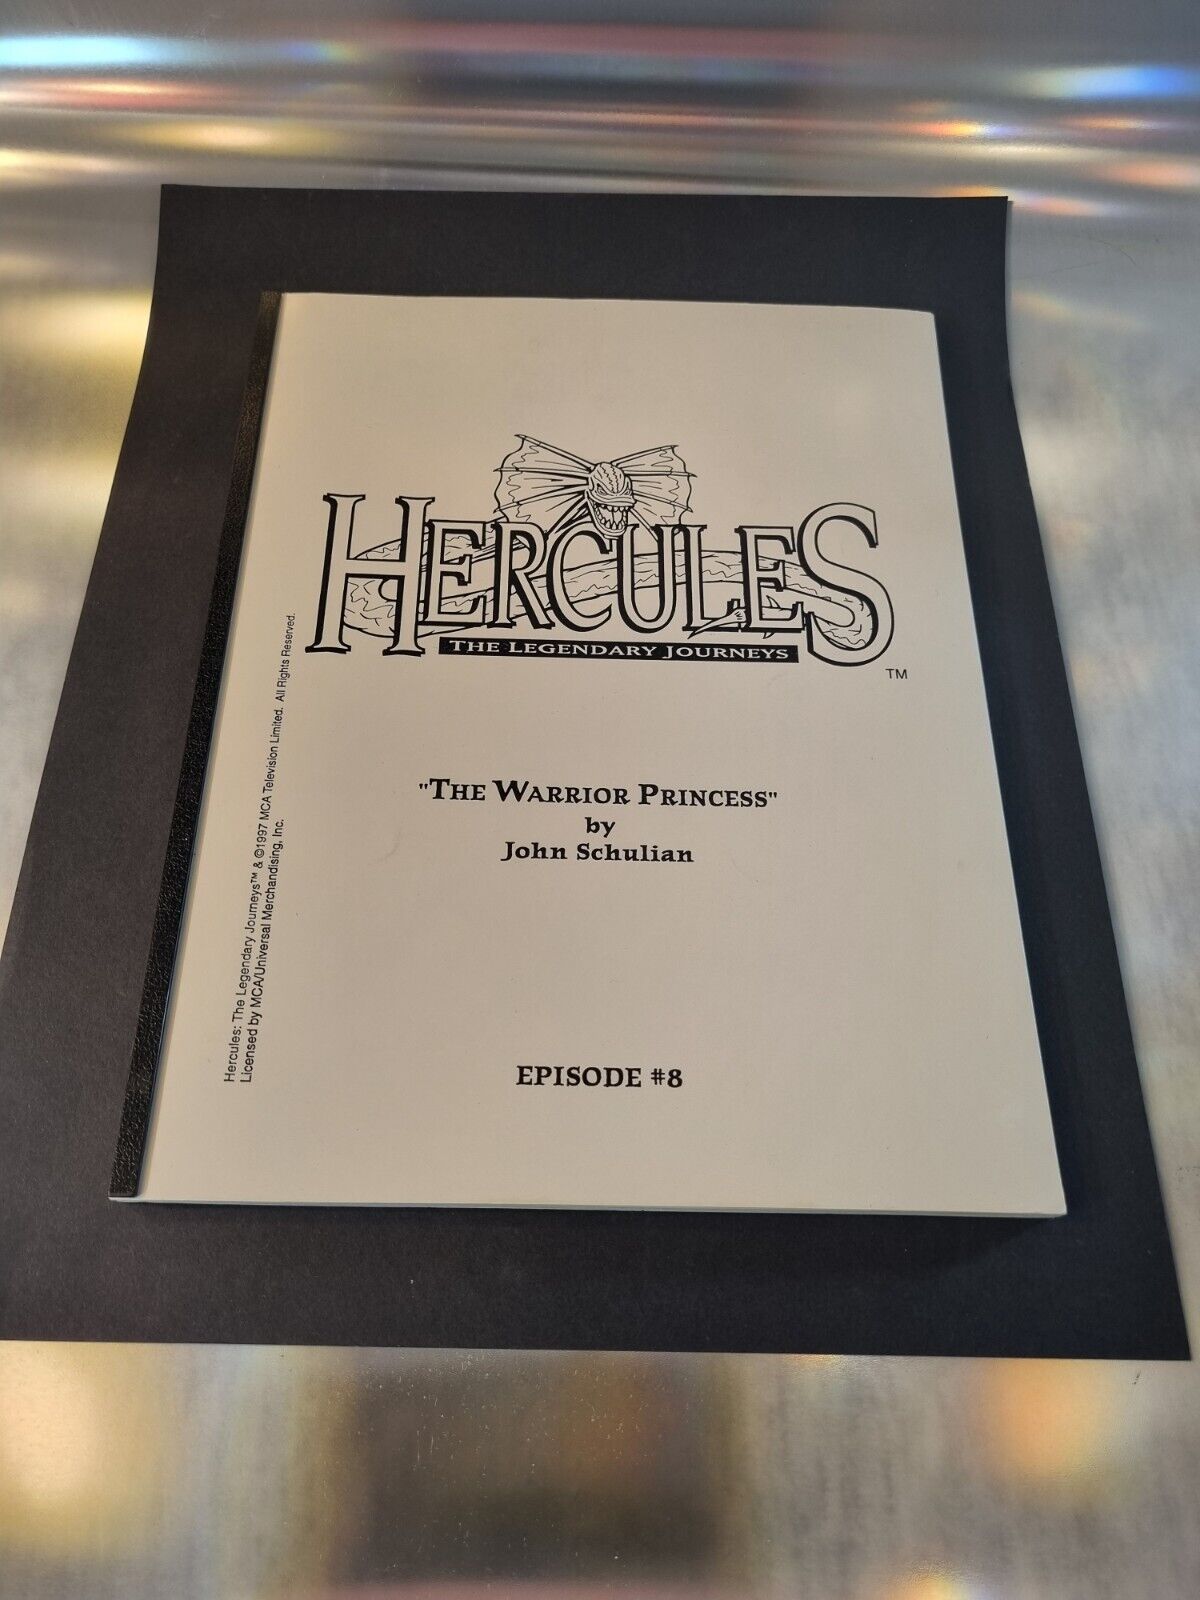 Script Hercules Legendary Journeys. 